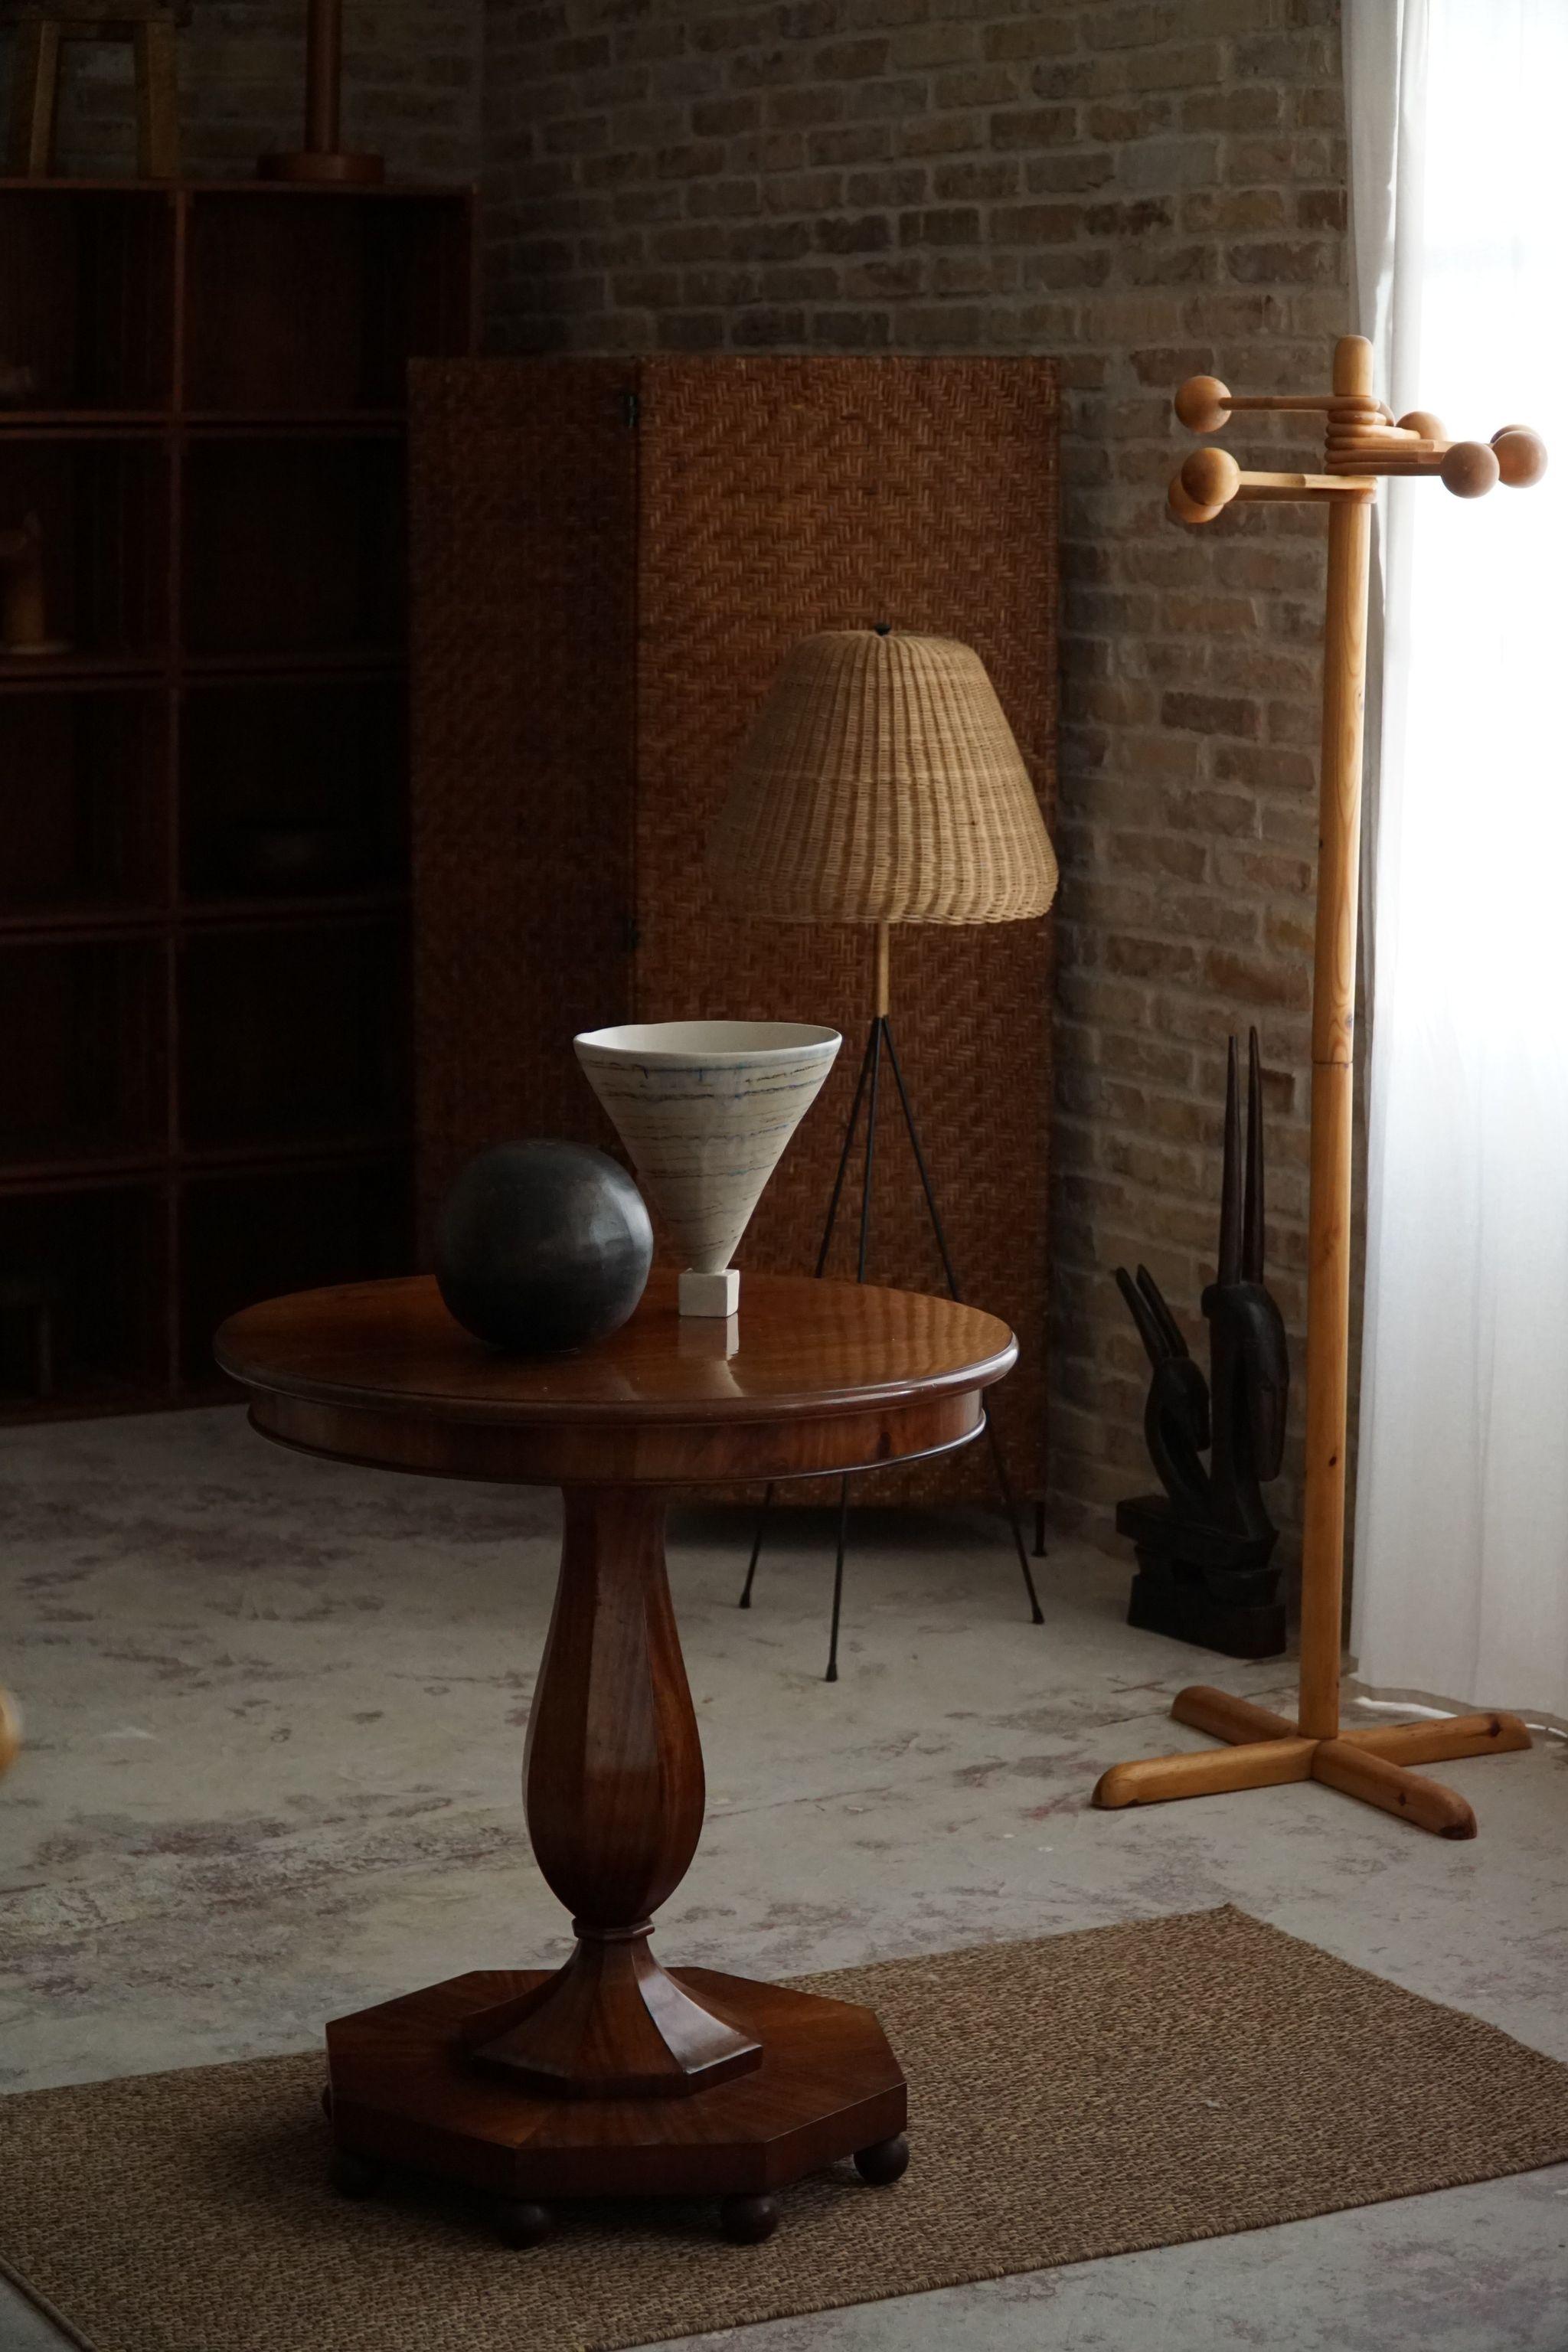 Dieser luxuriöse runde Sockel- und Beistelltisch ist ein beeindruckendes Zeugnis der Handwerkskunst eines dänischen Tischlers in der glamourösen Ära der 1940er Jahre. Dieses aus Nussbaumholz gefertigte Möbelstück vereint Form und Funktion und